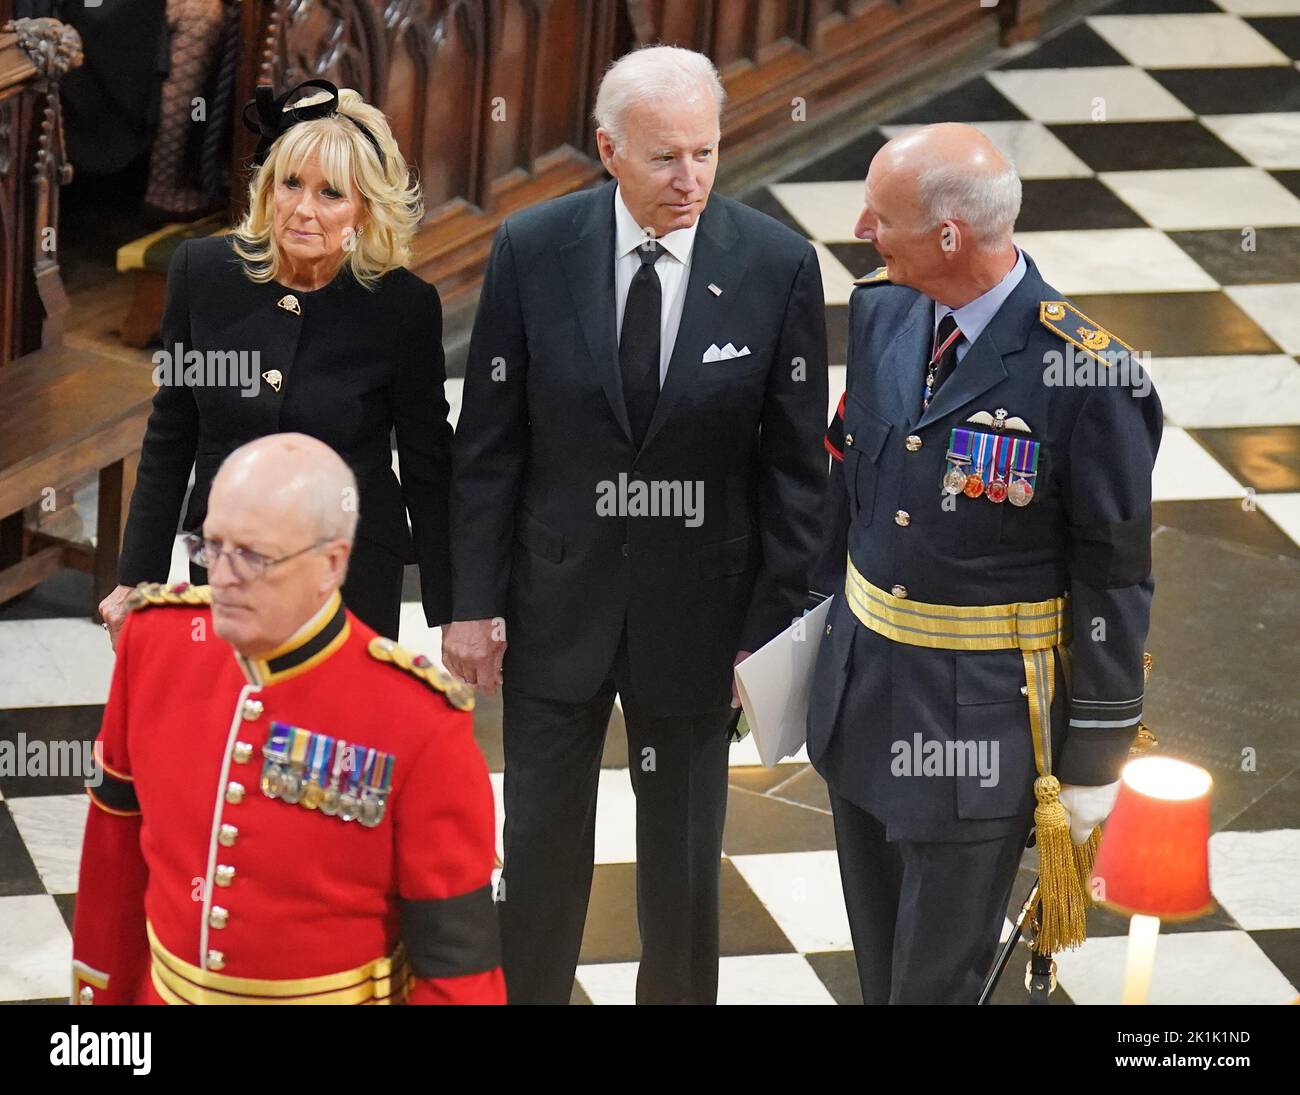 Il presidente DEGLI STATI UNITI Joe Biden (centro) e la First Lady Jill Biden arrivano al funerale di Stato della regina Elisabetta II, tenutosi all'Abbazia di Westminster, Londra. Data immagine: Lunedì 19 settembre 2022. Foto Stock